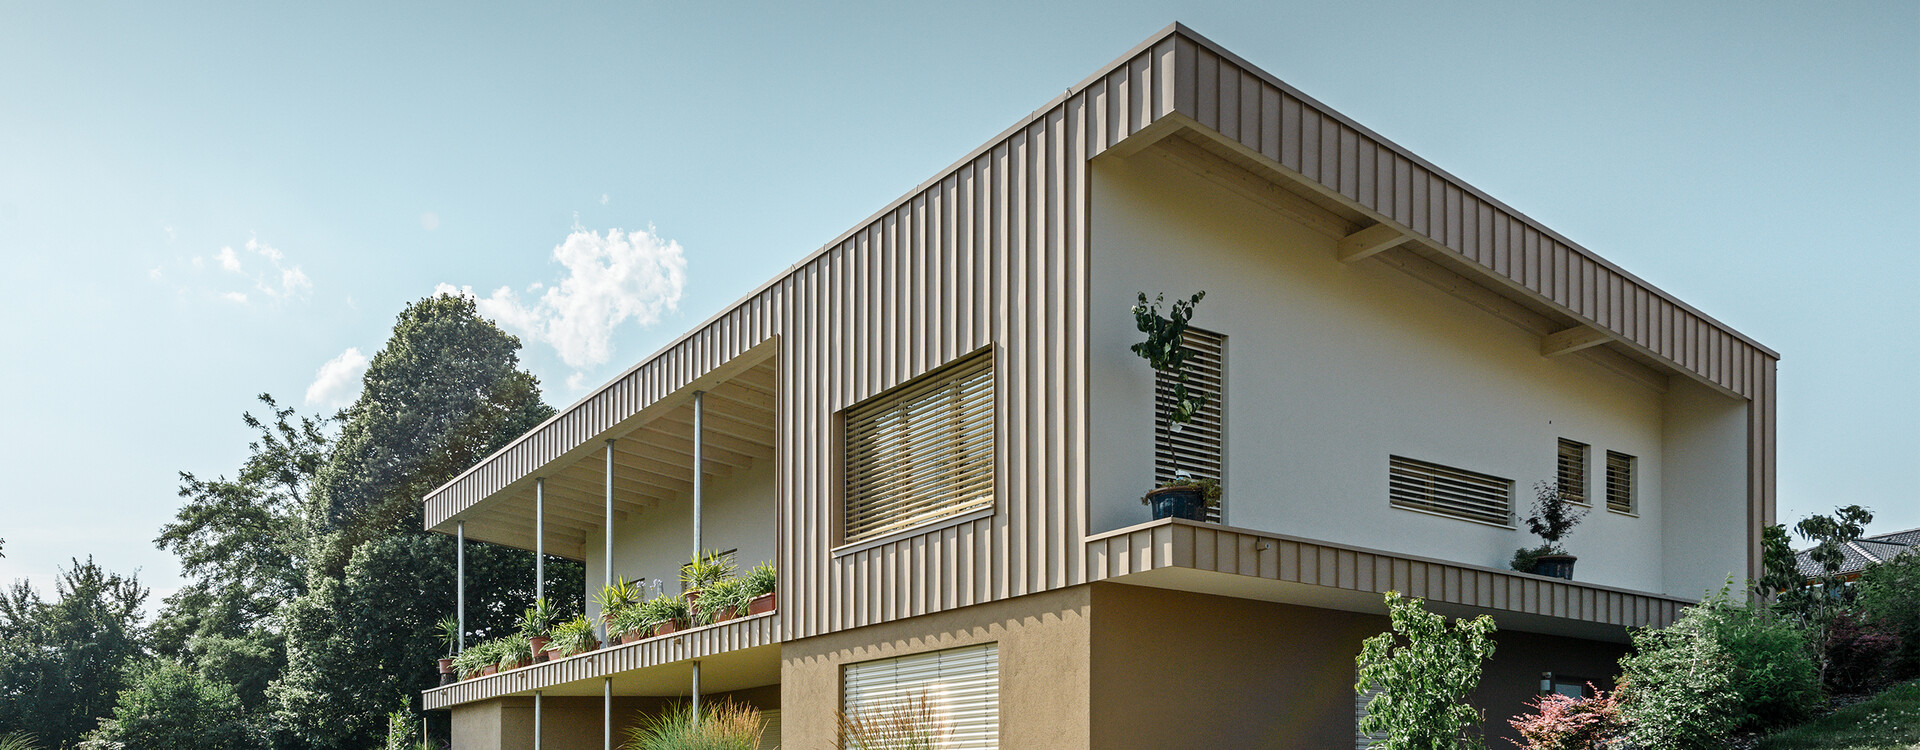 Modernes Einfamilienhaus eingedeckt mit PREFA Prefalz Fassadenelementen